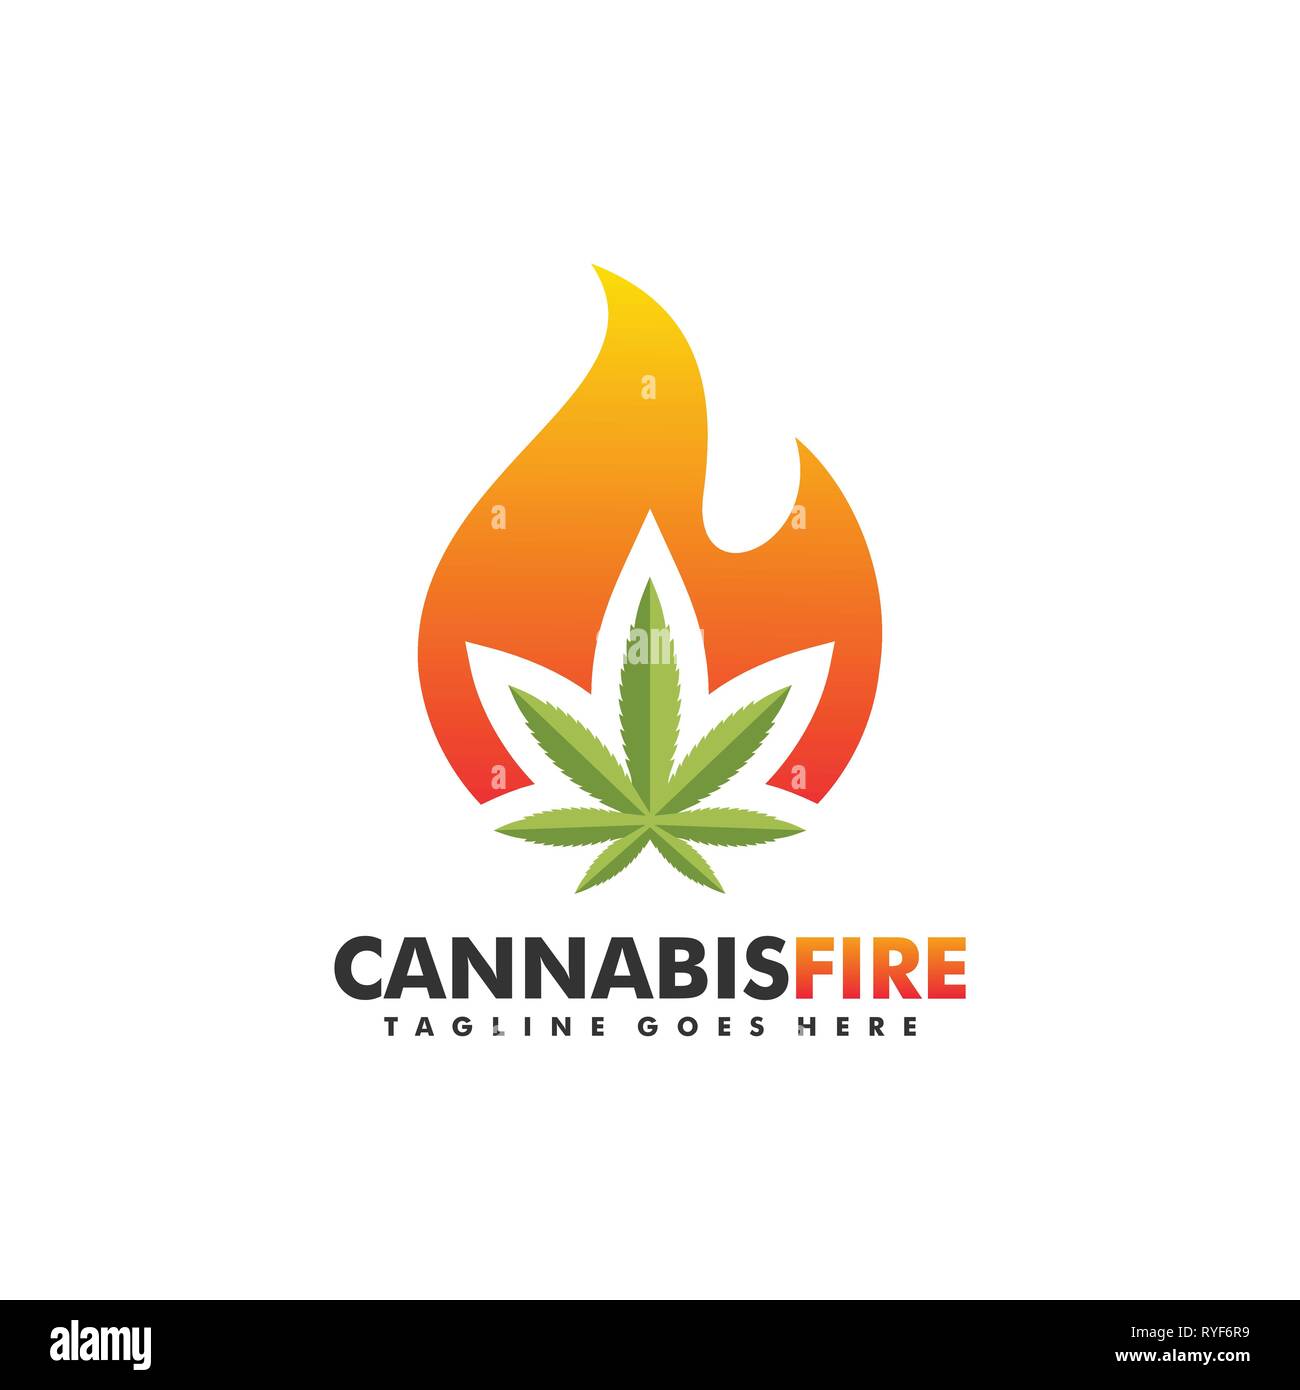 Cannabis Feuer 2 Konzeption Illustration Vektor Design vorlage. Geeignet für kreative Industrie, Multimedia, Entertainment, Ausbildungen, Shop, und alle rela Stock Vektor